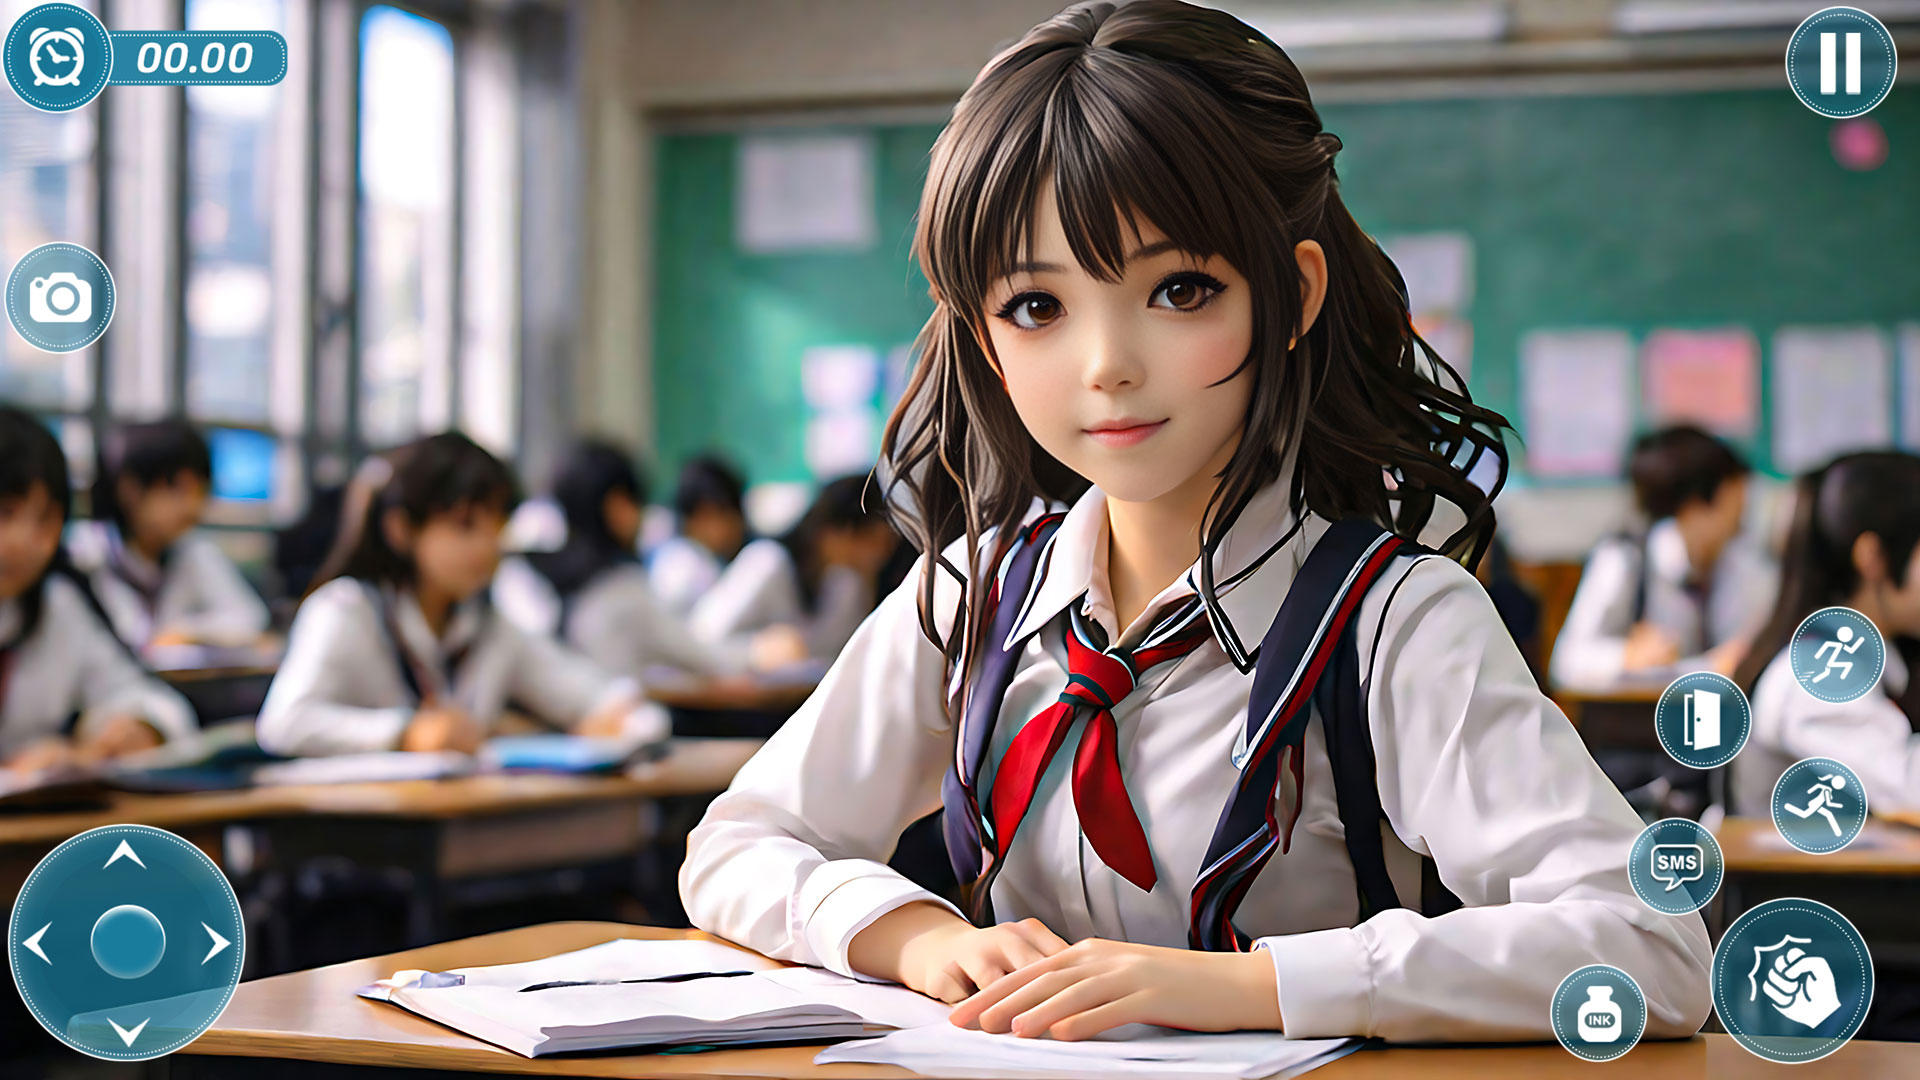 School Simulator Anime Girl 3Dのキャプチャ